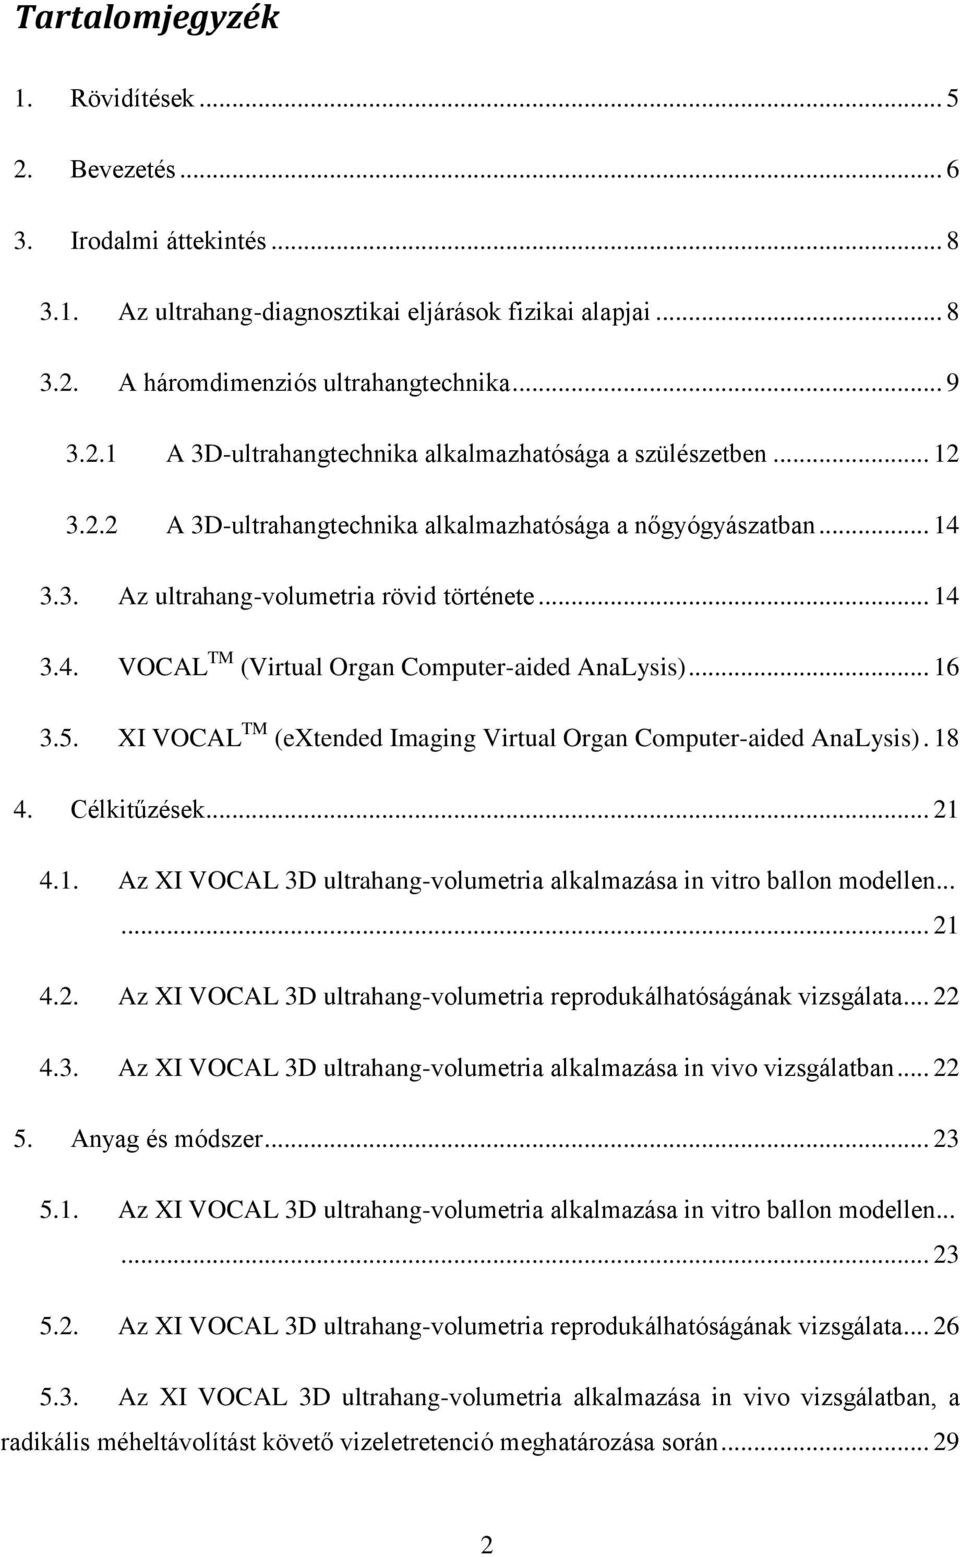 XI VOCAL TM (extended Imaging Virtual Organ Computer-aided AnaLysis). 18 4. Célkitűzések... 21 4.1. Az XI VOCAL 3D ultrahang-volumetria alkalmazása in vitro ballon modellen...... 21 4.2. Az XI VOCAL 3D ultrahang-volumetria reprodukálhatóságának vizsgálata.